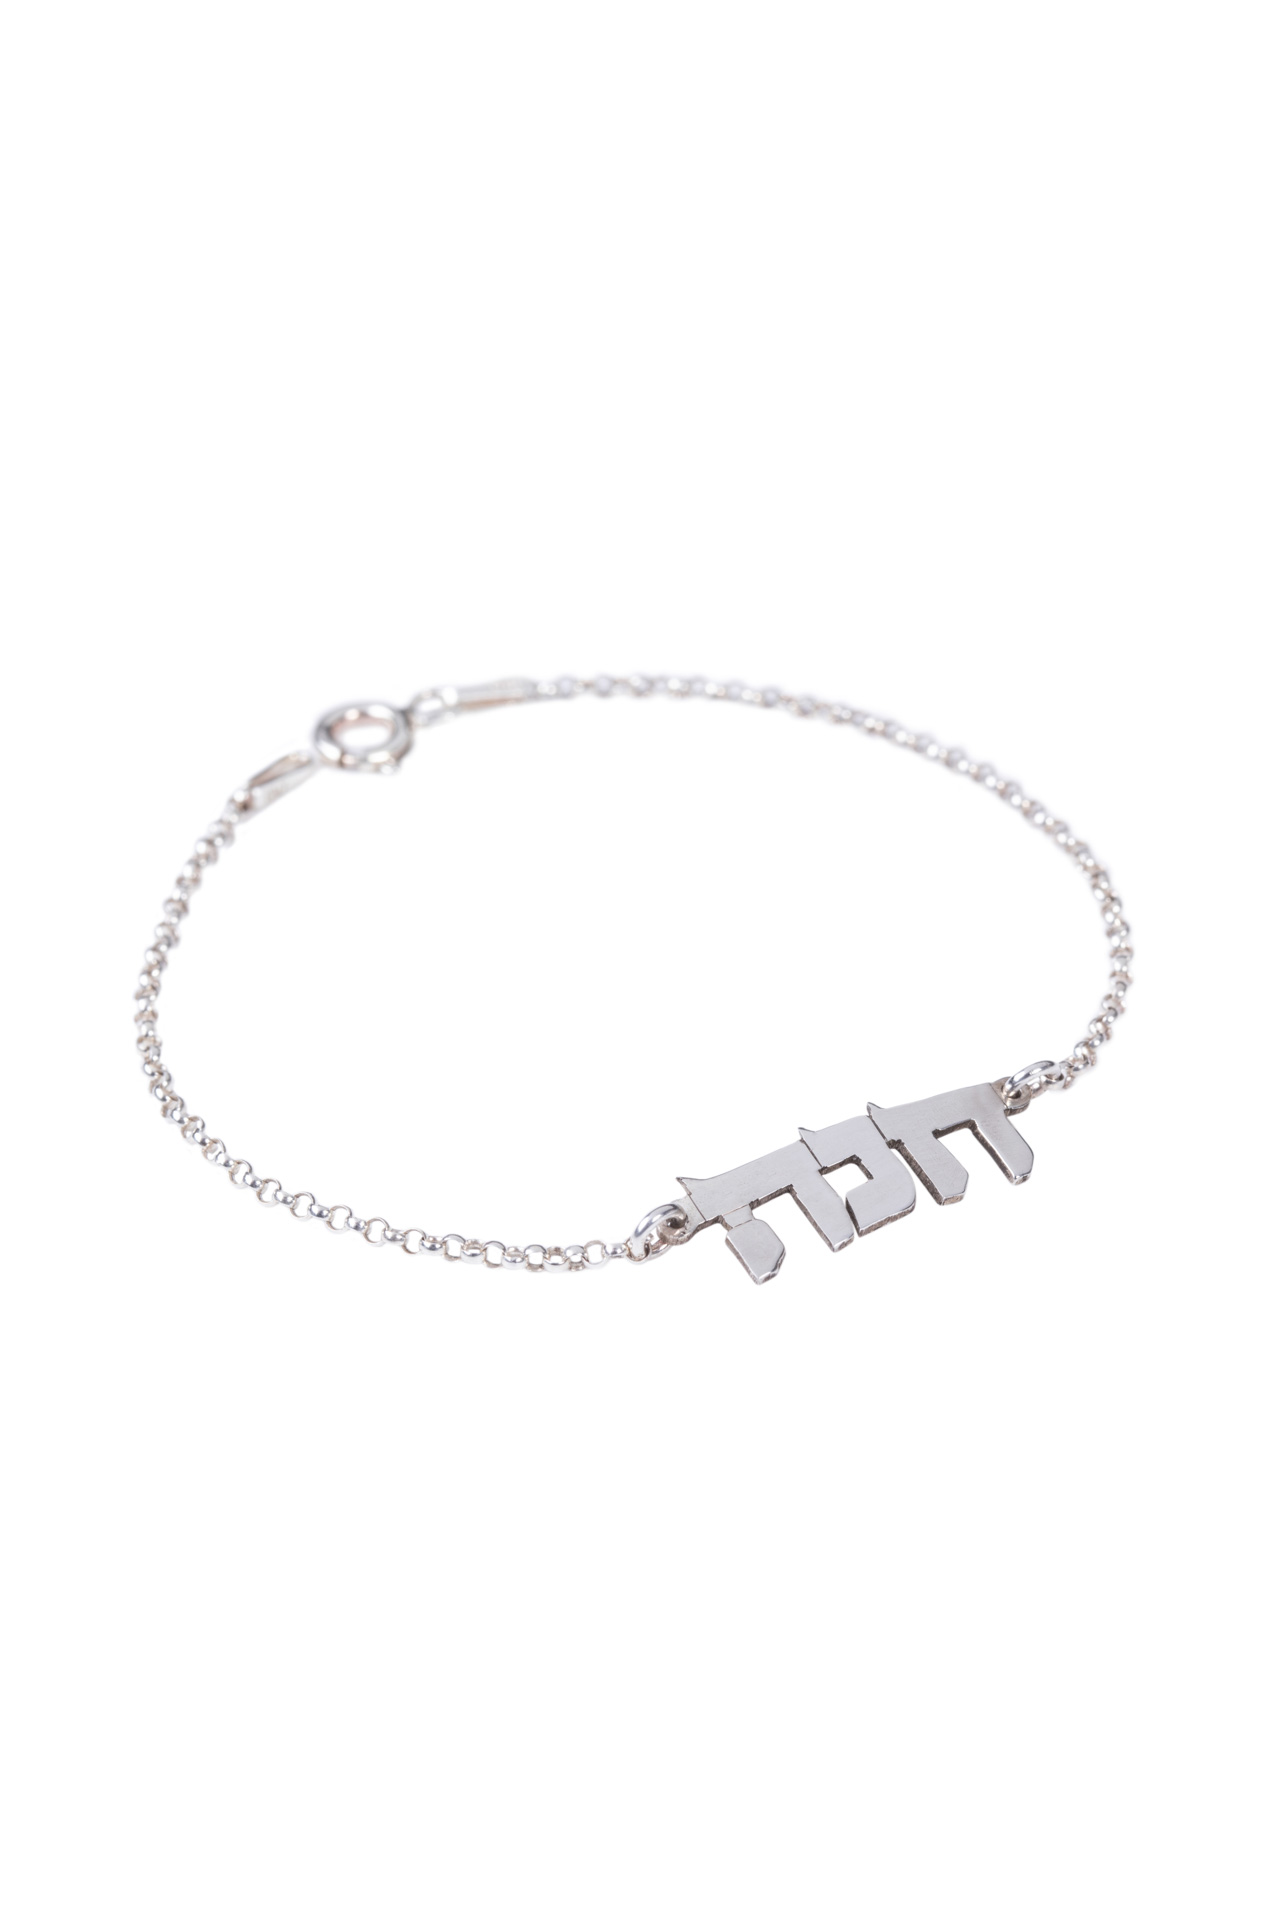 Girls Name Bracelet Bracelet for Girls Baby Bracelet Girl -  Israel